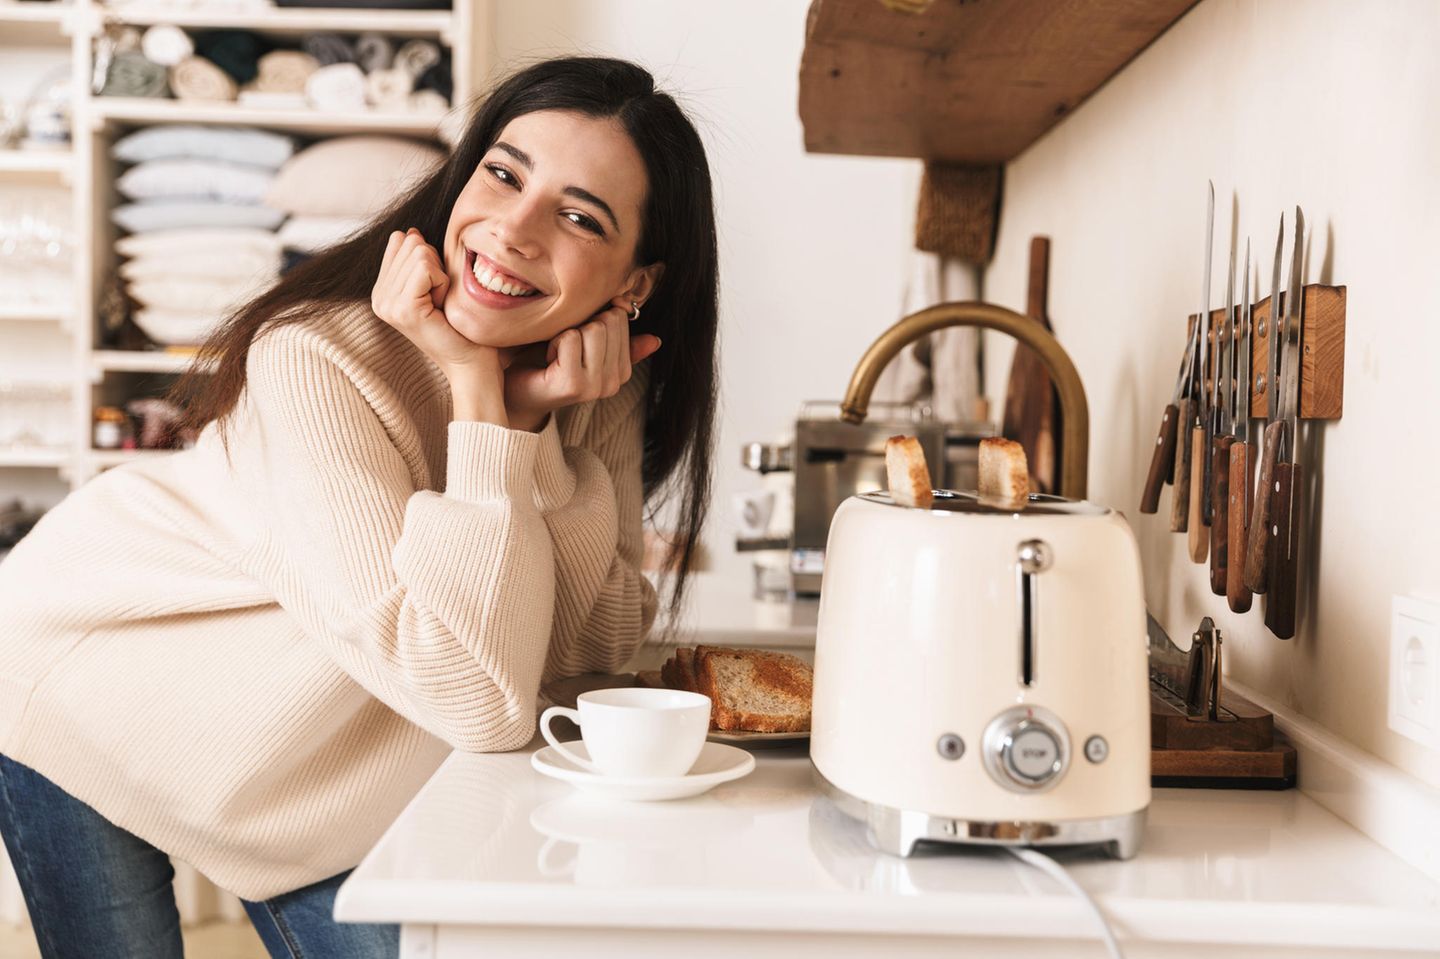 Deal des Tages: 50% Ersparnis beim Kauf des beliebten Retro-Toasters, Frau in Küche